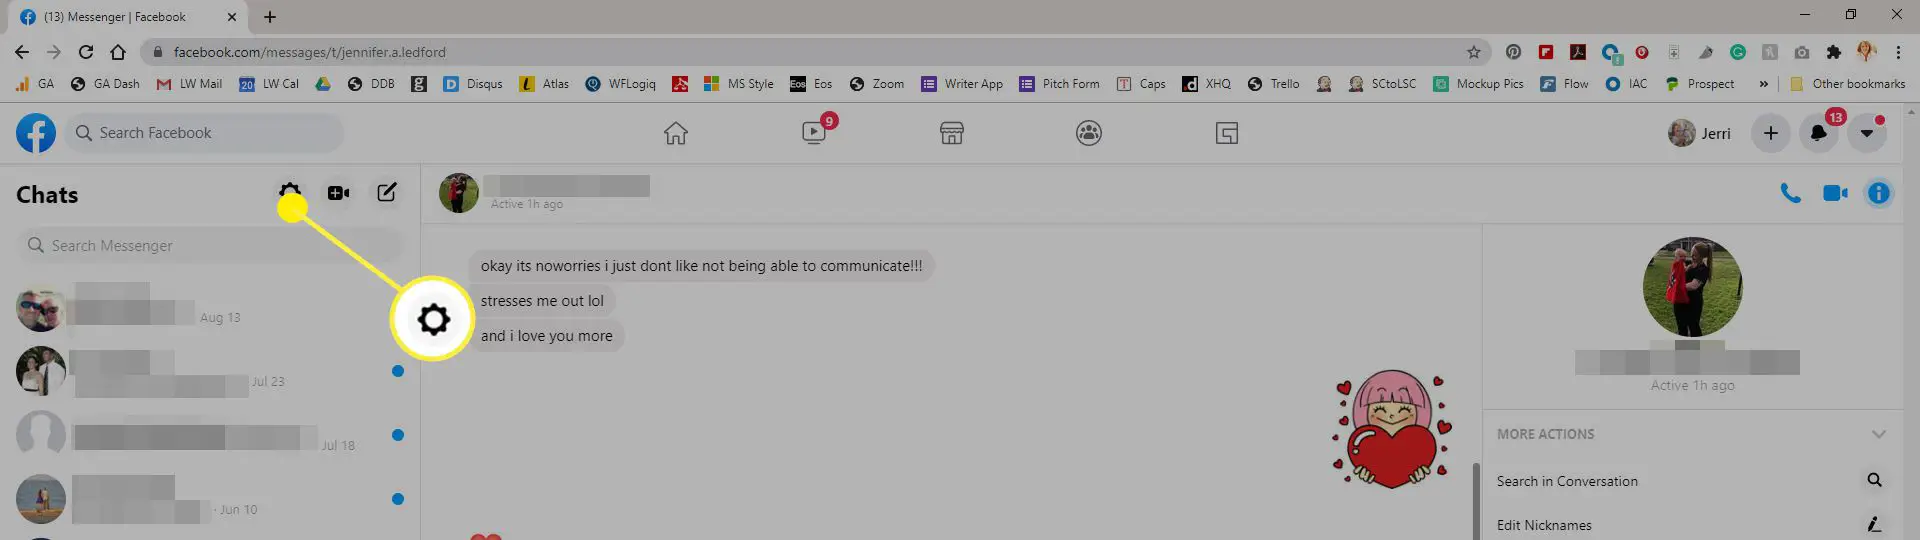 Captura de tela das configurações do Messenger